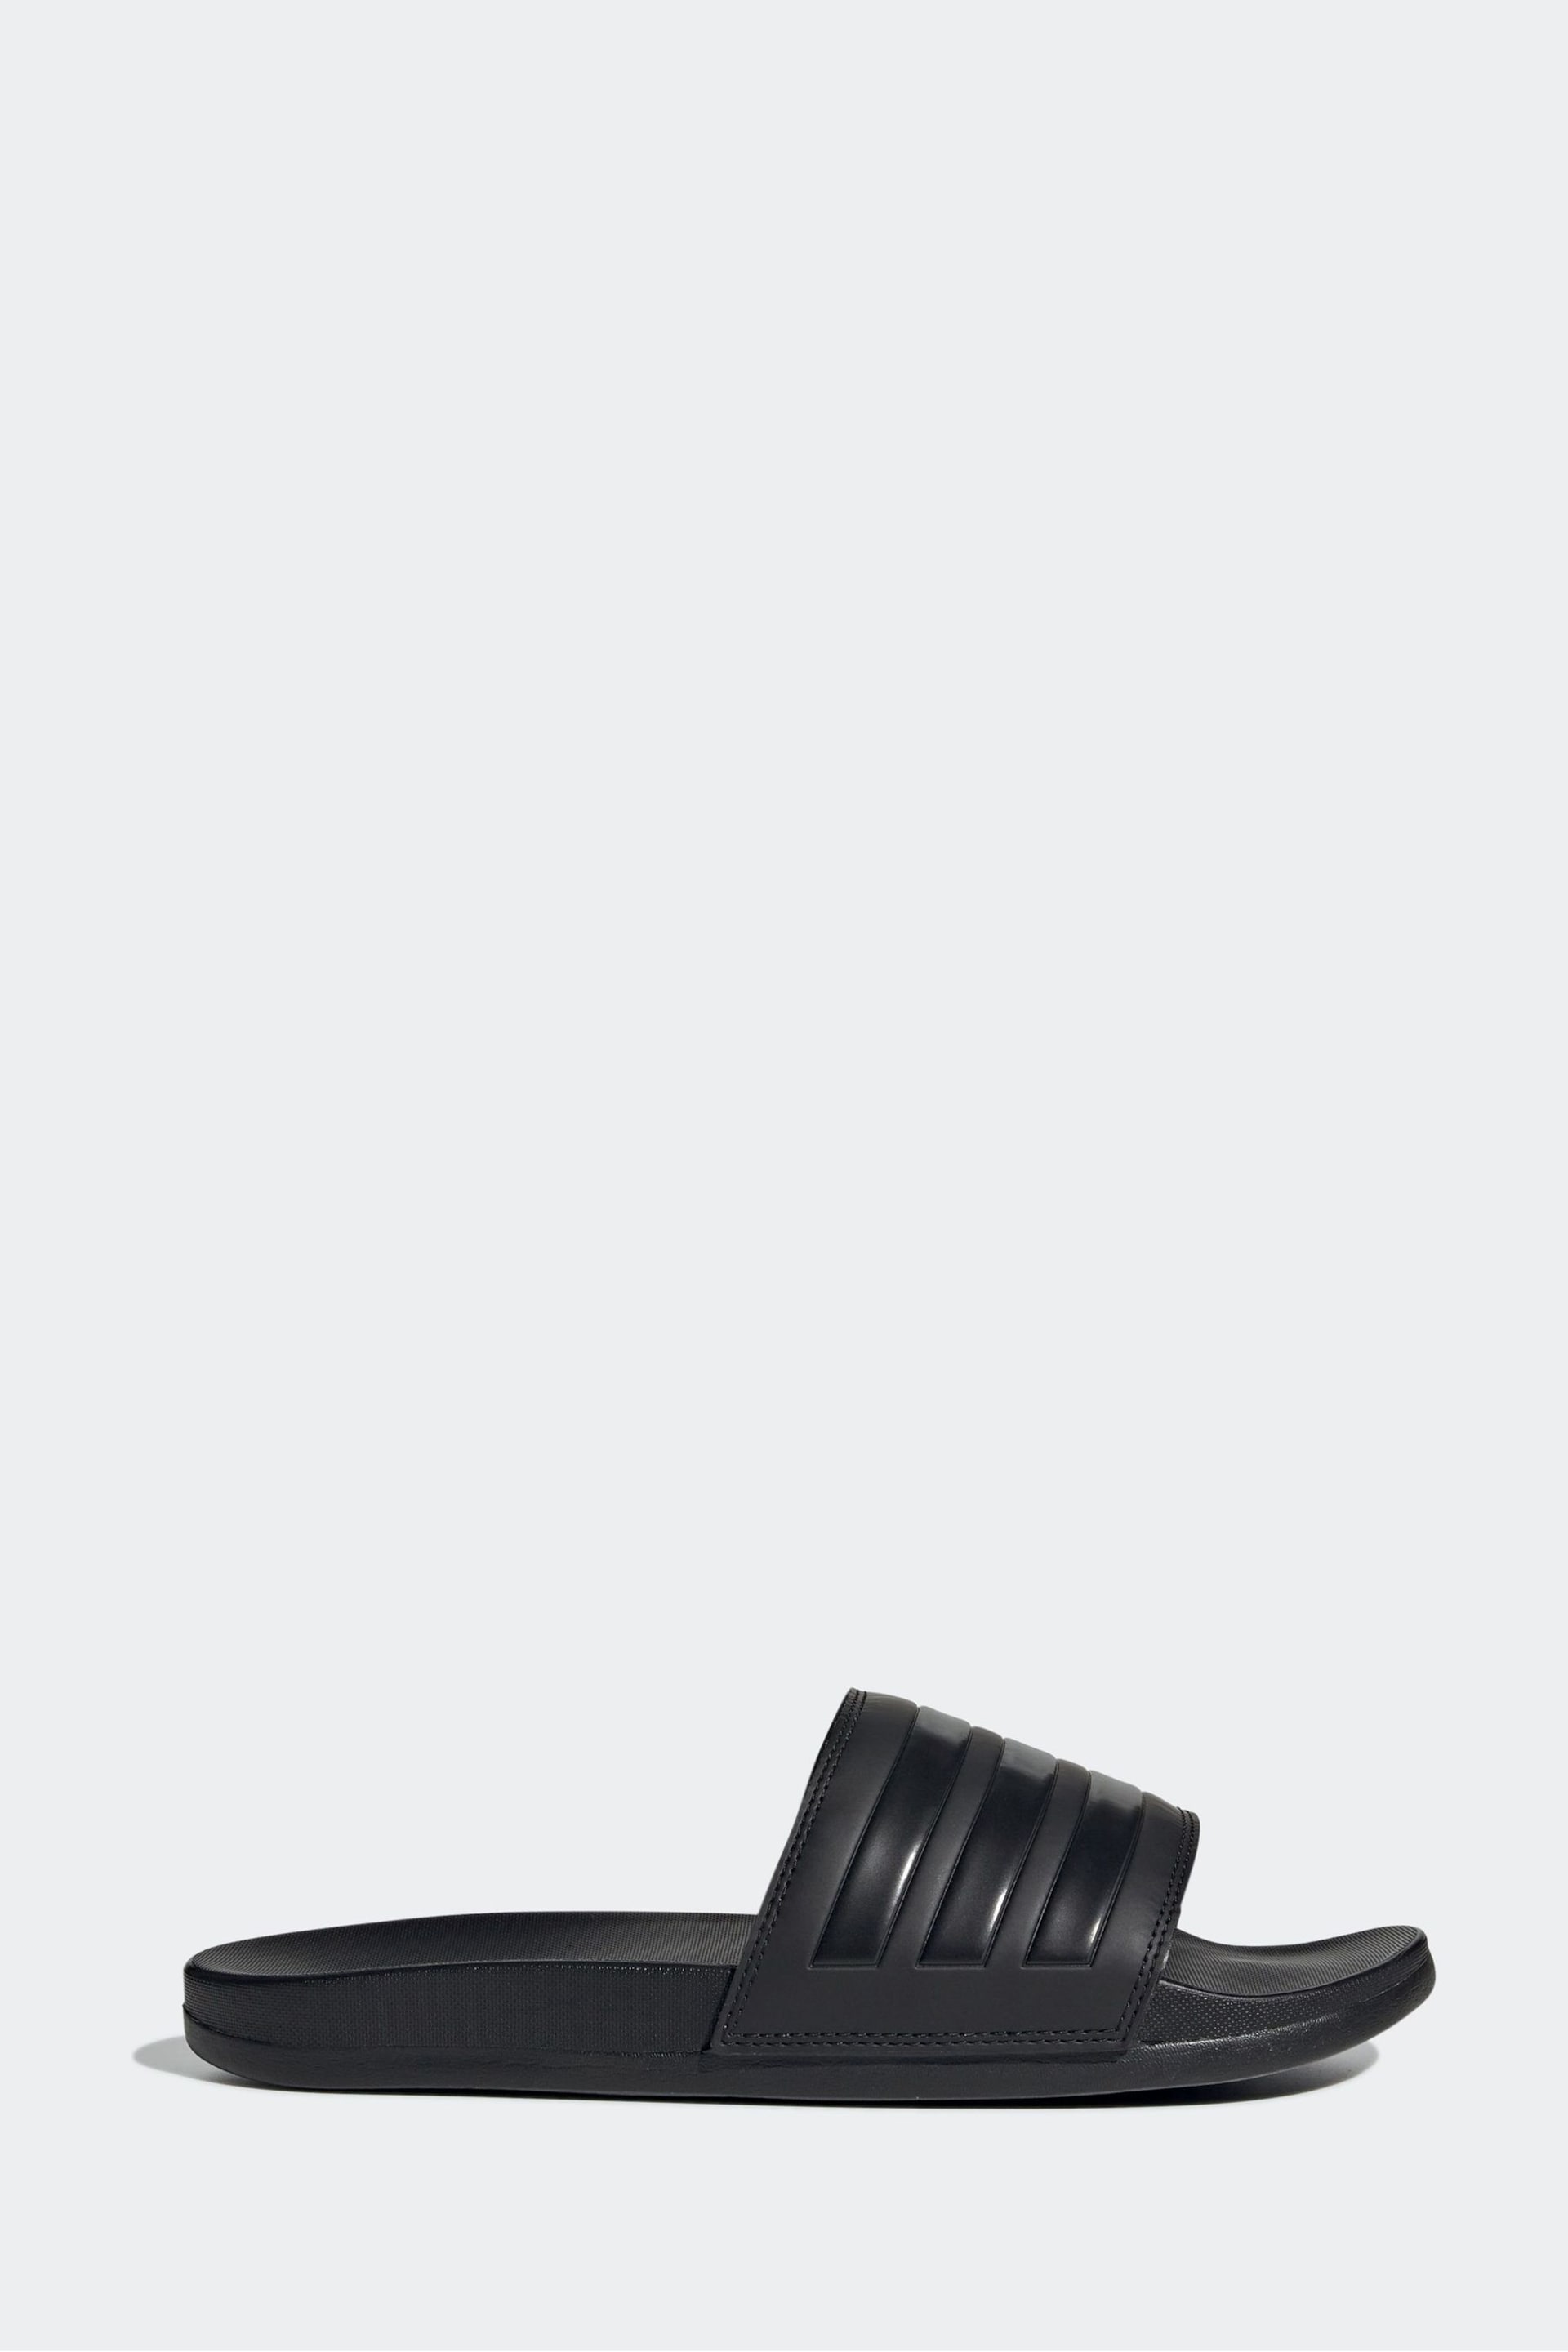 adidas Black Adilette Comfort Slides - Image 1 of 9